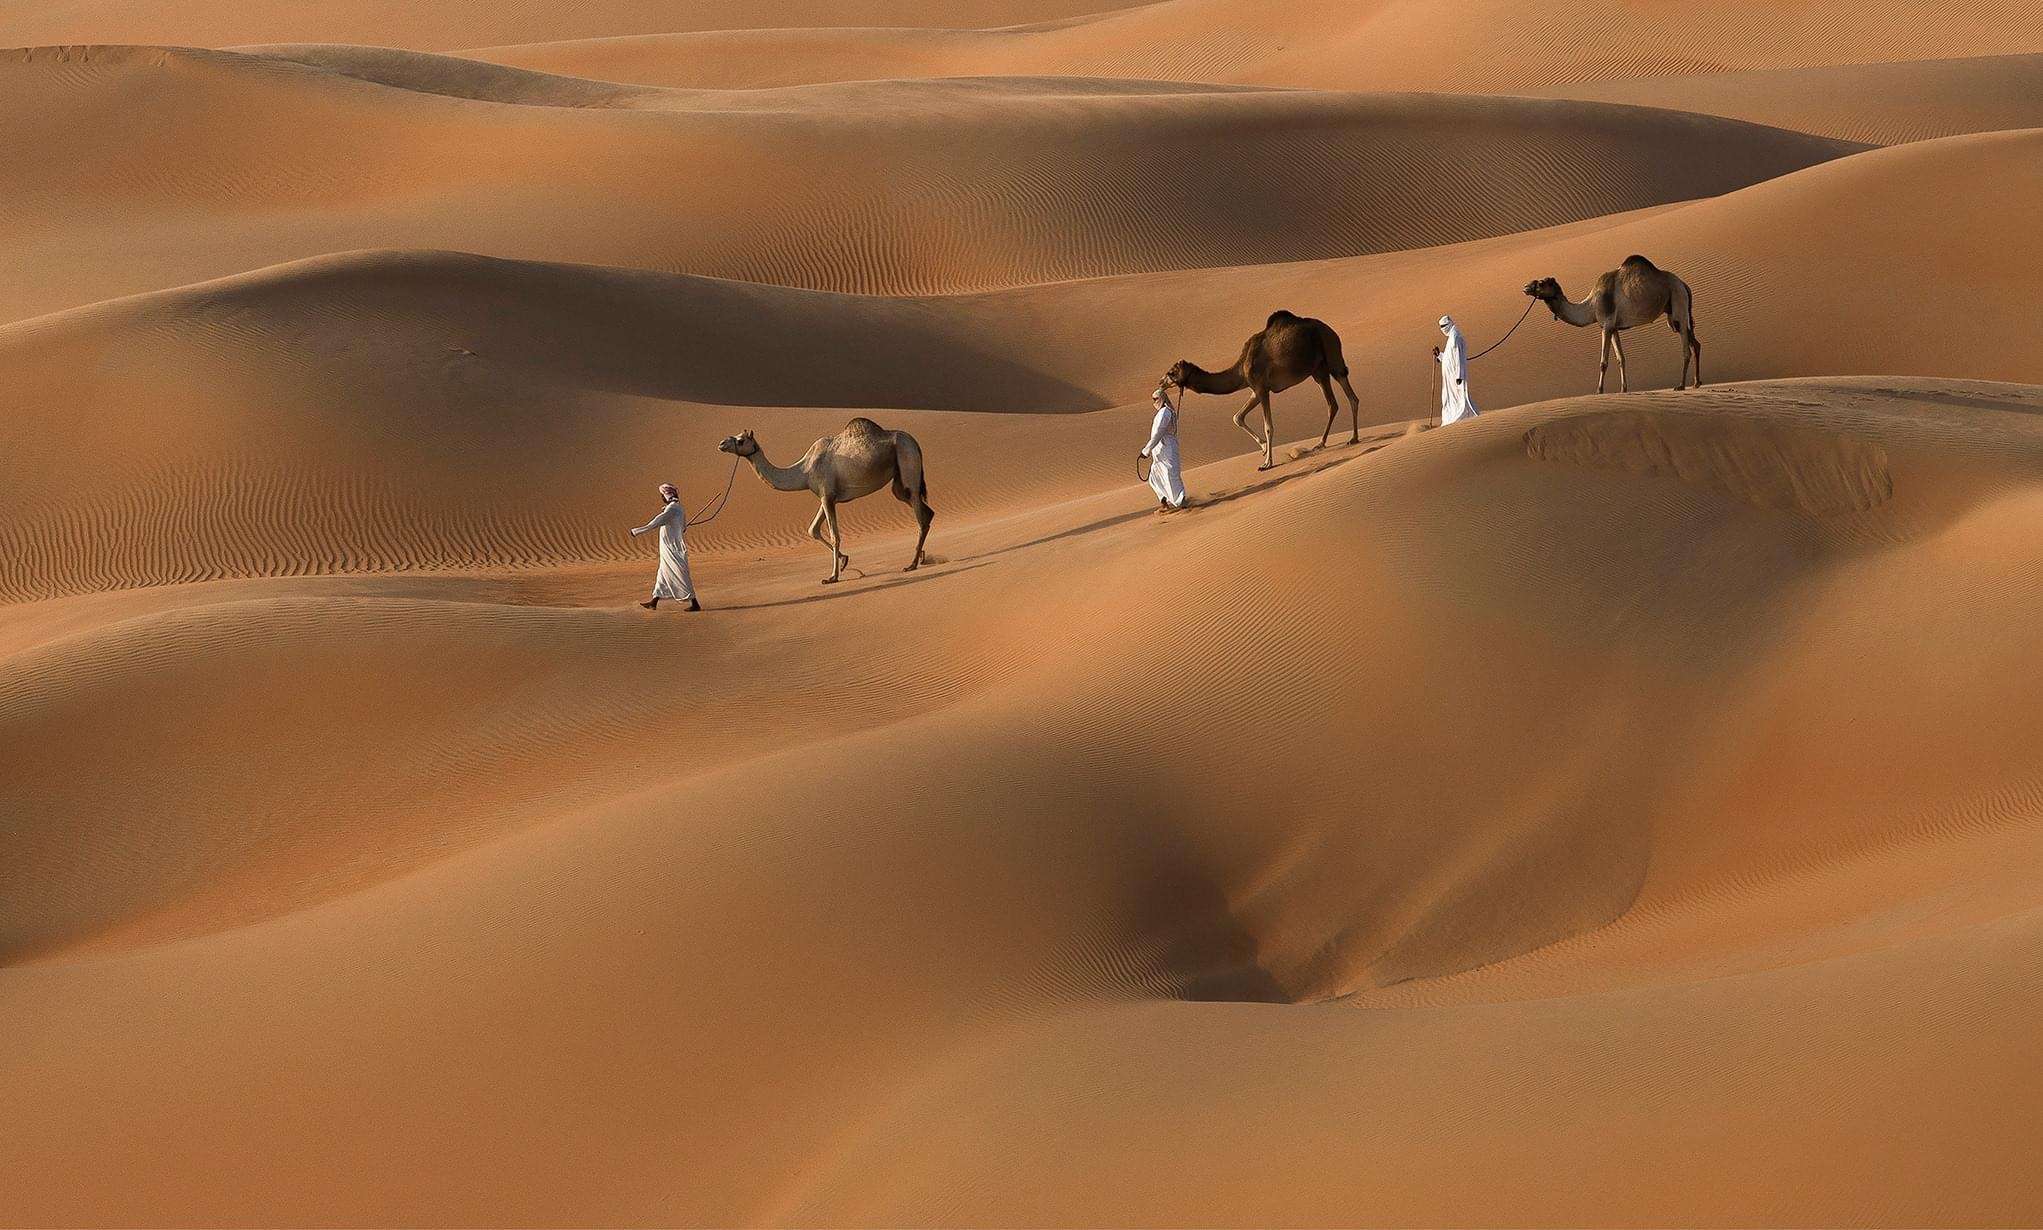 Morocco best sahara tours, Tours in desert, Morocco desert tour